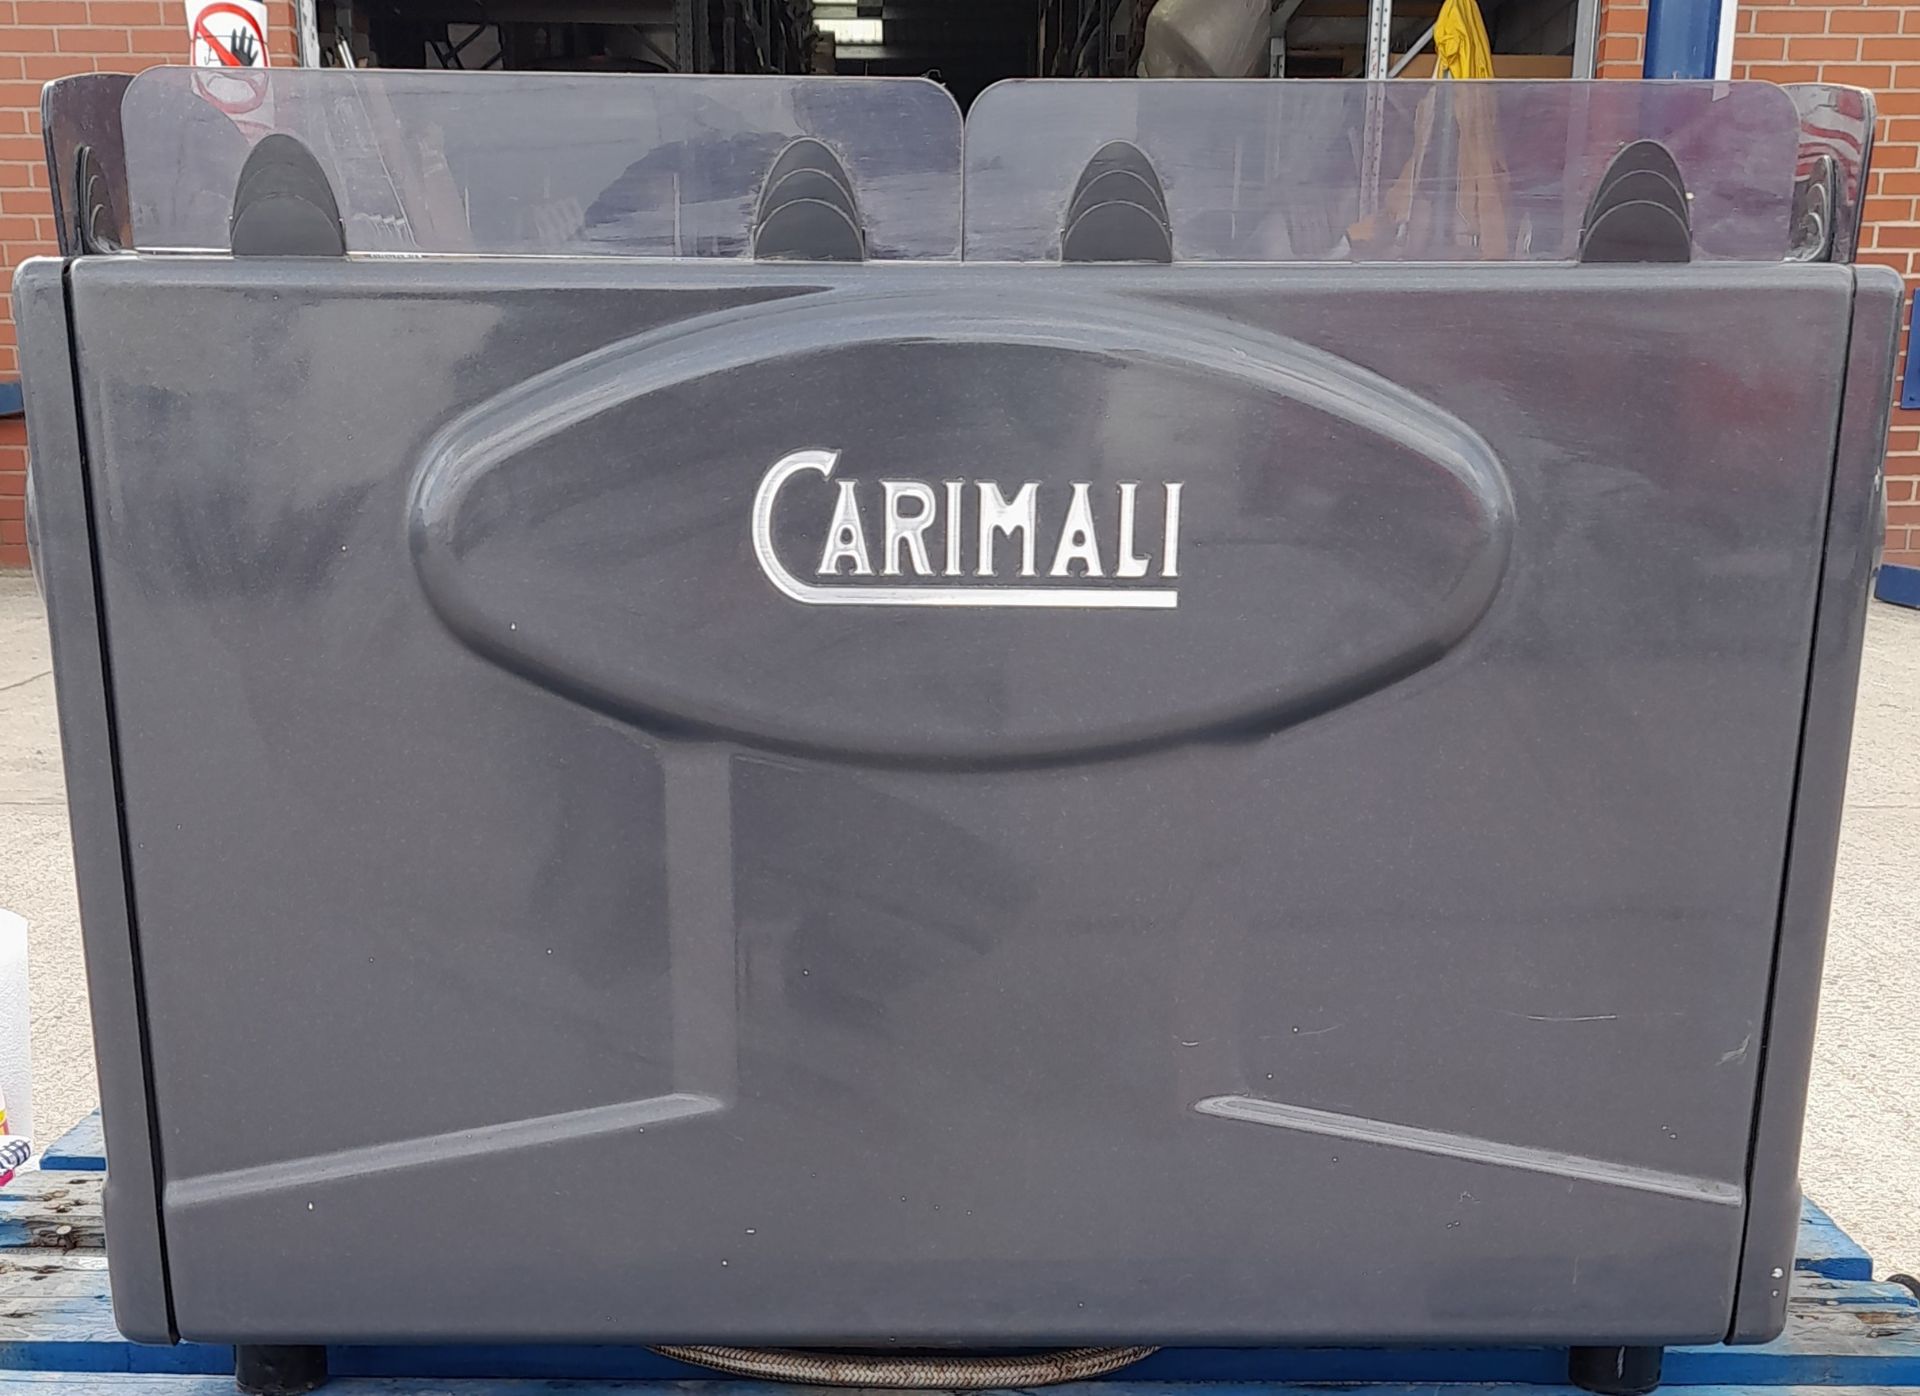 1 x Carimali Commercial Espresso Coffee Machine - CL011 - Location: Altrincham WA14 - Image 2 of 9